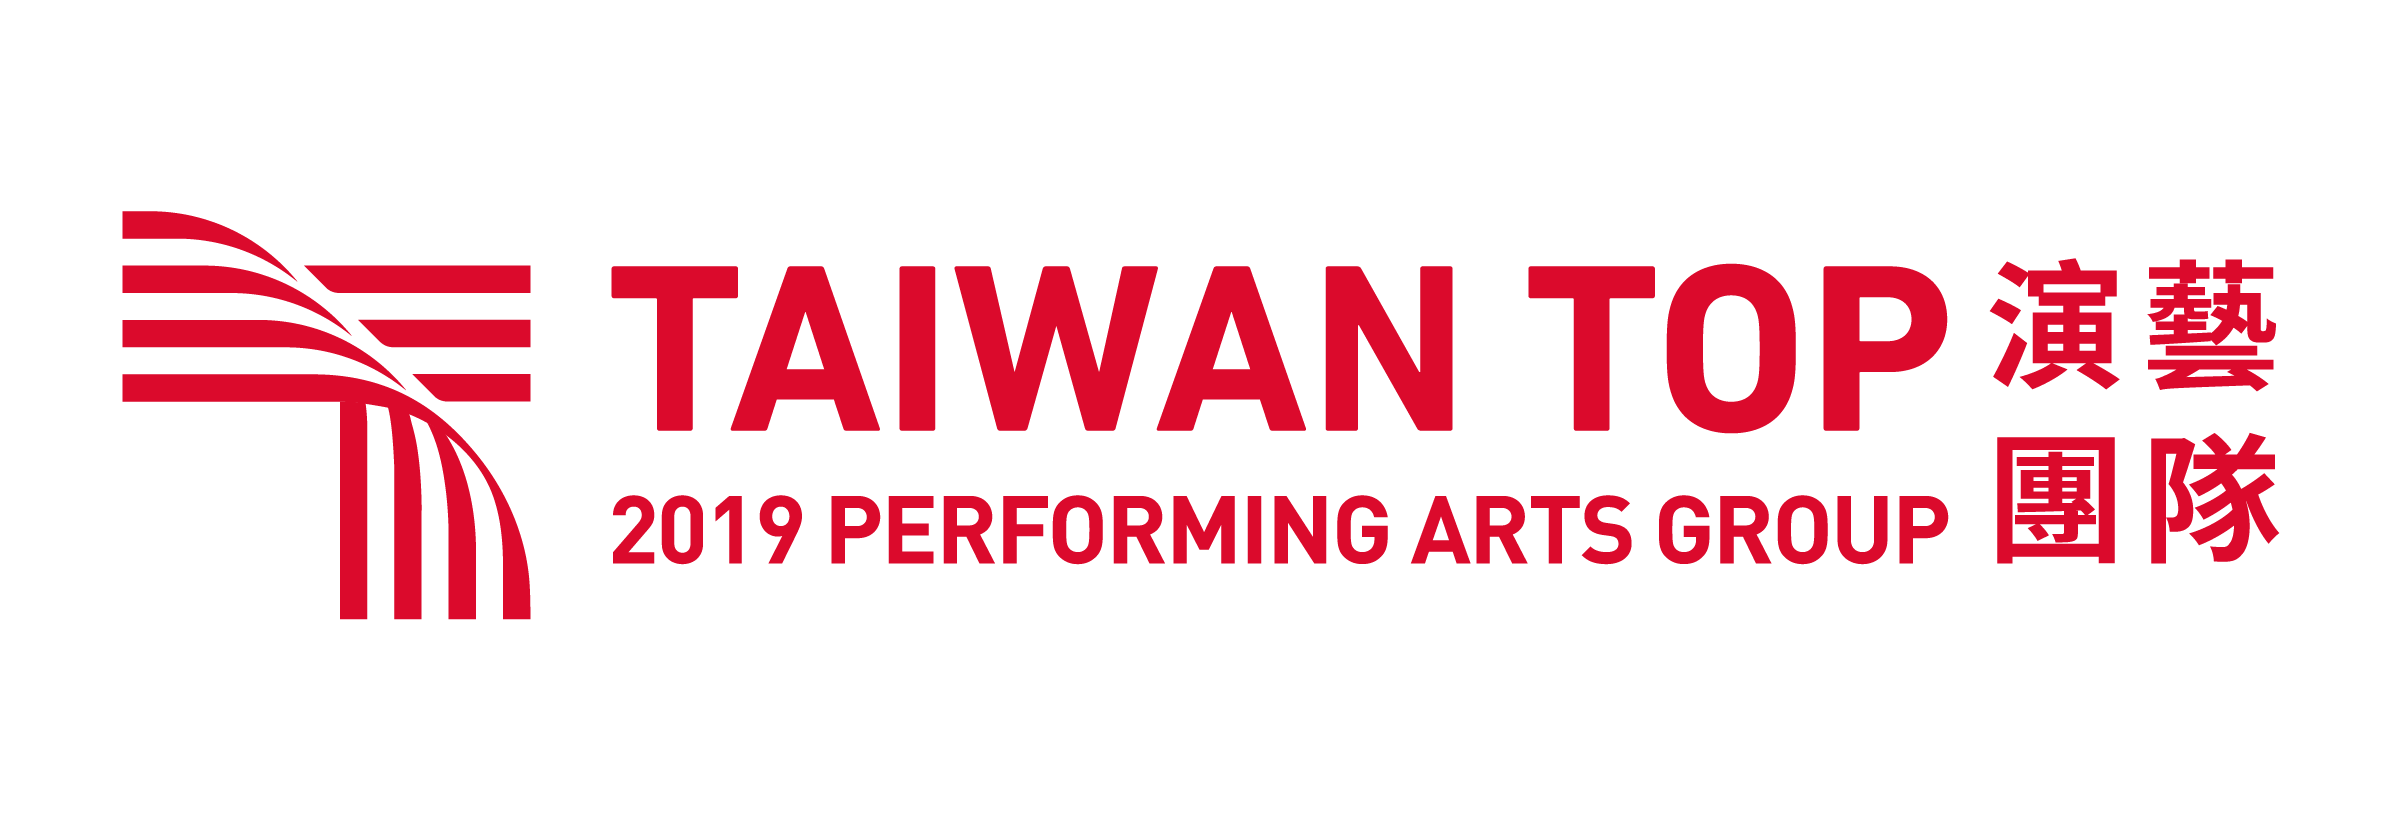 TICF Logo_TaiwanTop.png